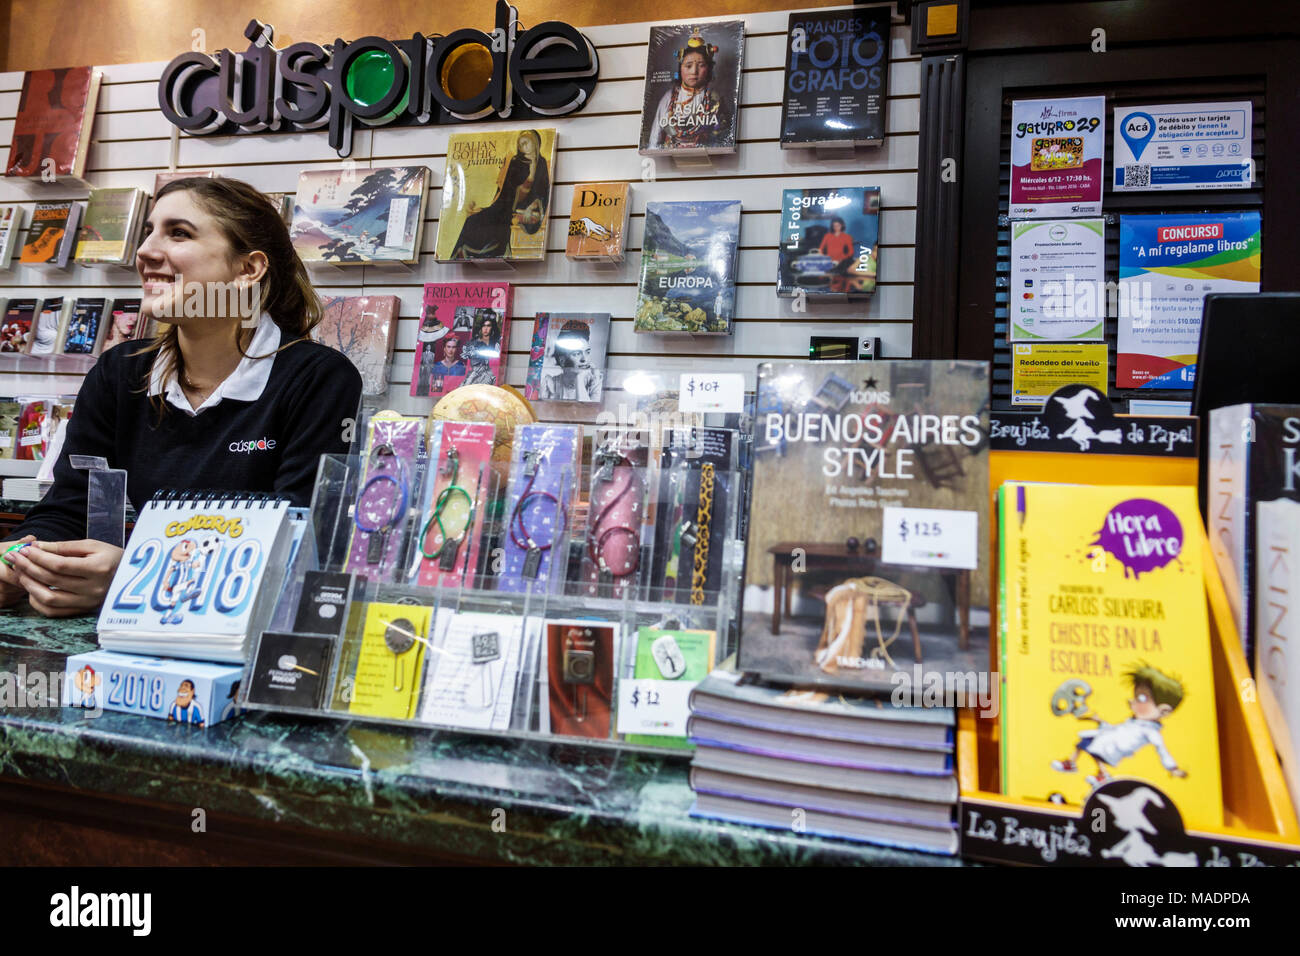 Buenos Aires Argentina, Recoleta Mall, libreria Libreria Cuspide Books, vendita al dettaglio, interno interno, cassiere, ragazza ragazze, femmina bambini bambini bambini bambini giovani Foto Stock